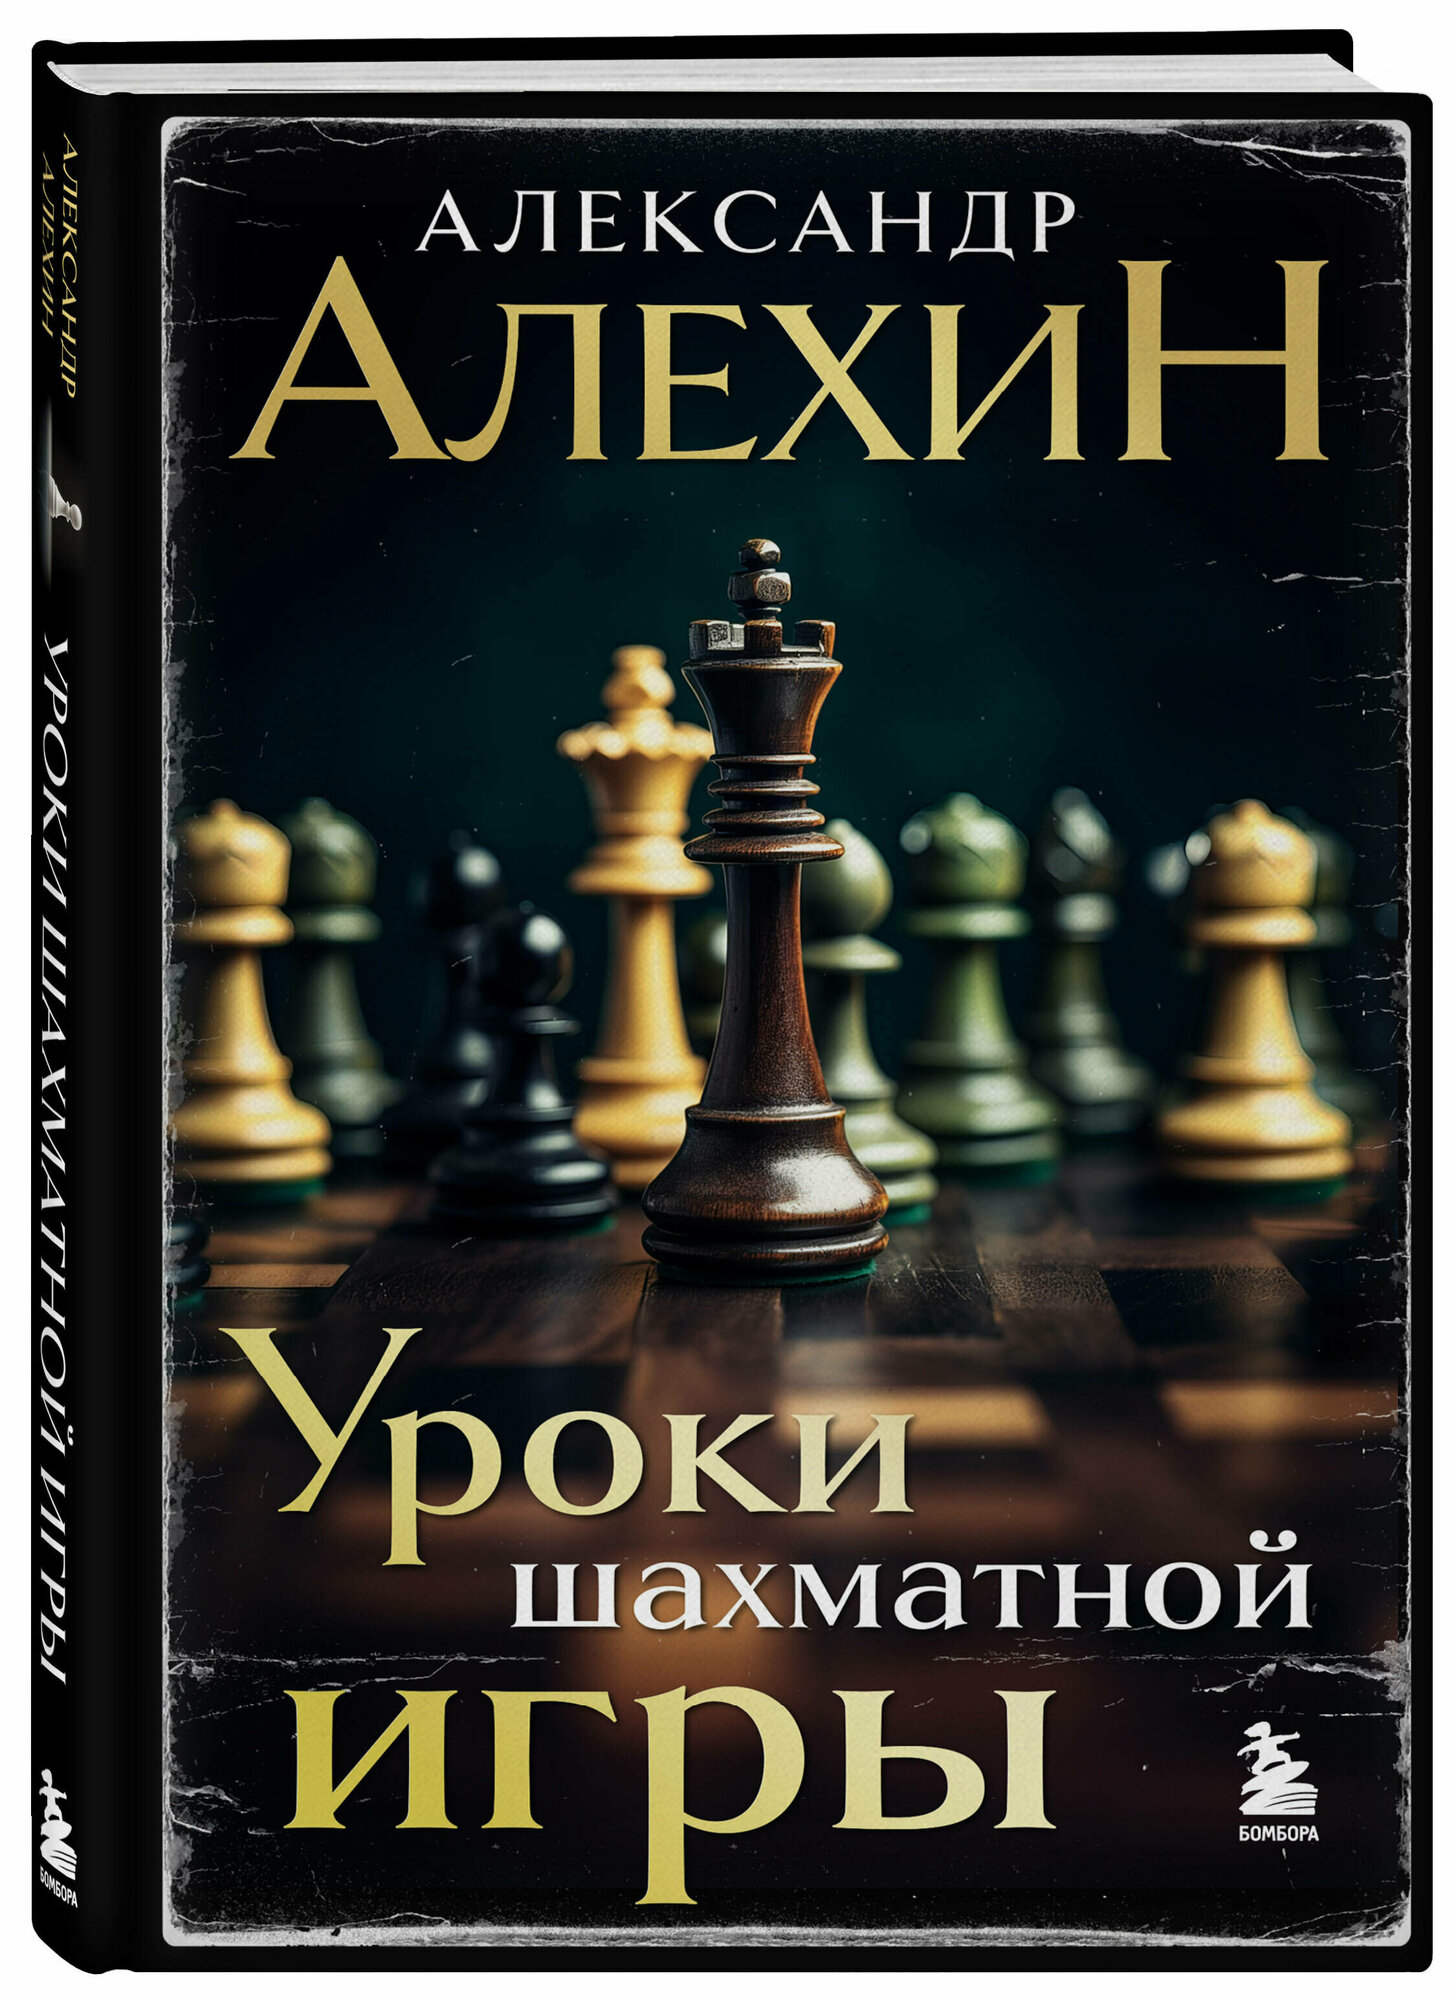 Алехин А. А. Александр Алехин. Уроки шахматной игры (3-е изд.) (новое оформление)